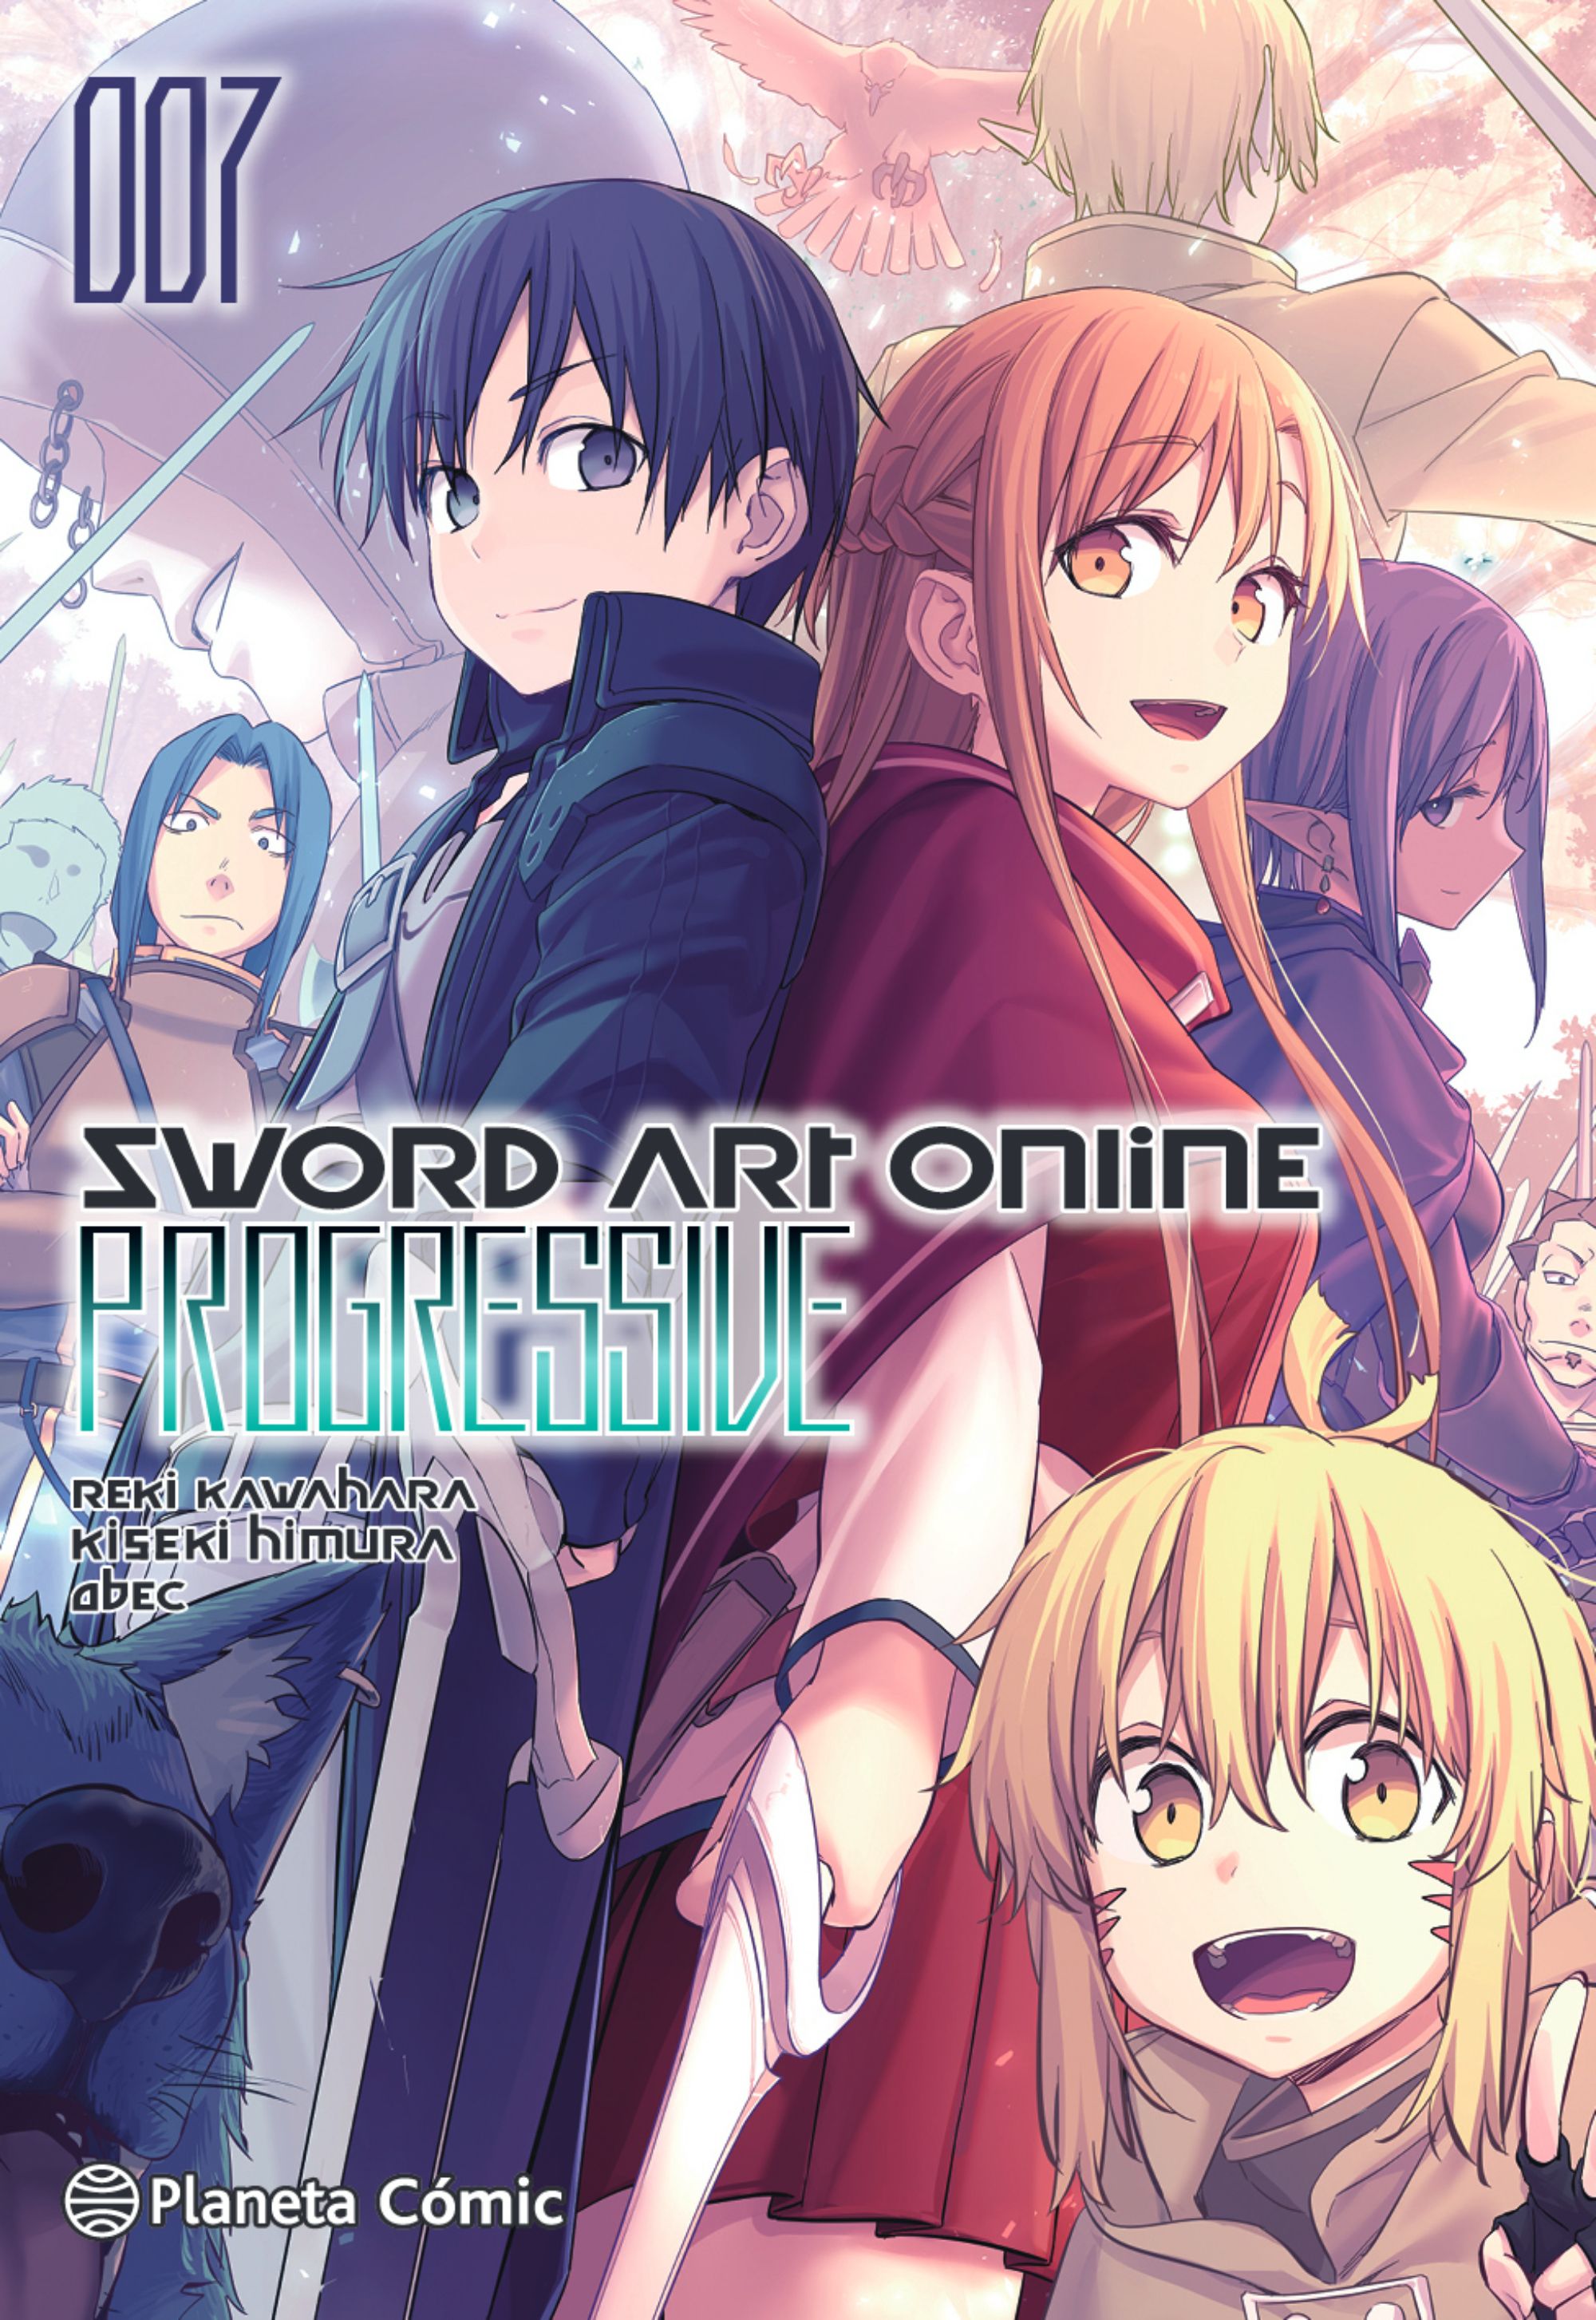 Os jogos de Sword Art Online no universo canônico de Reki Kawahara